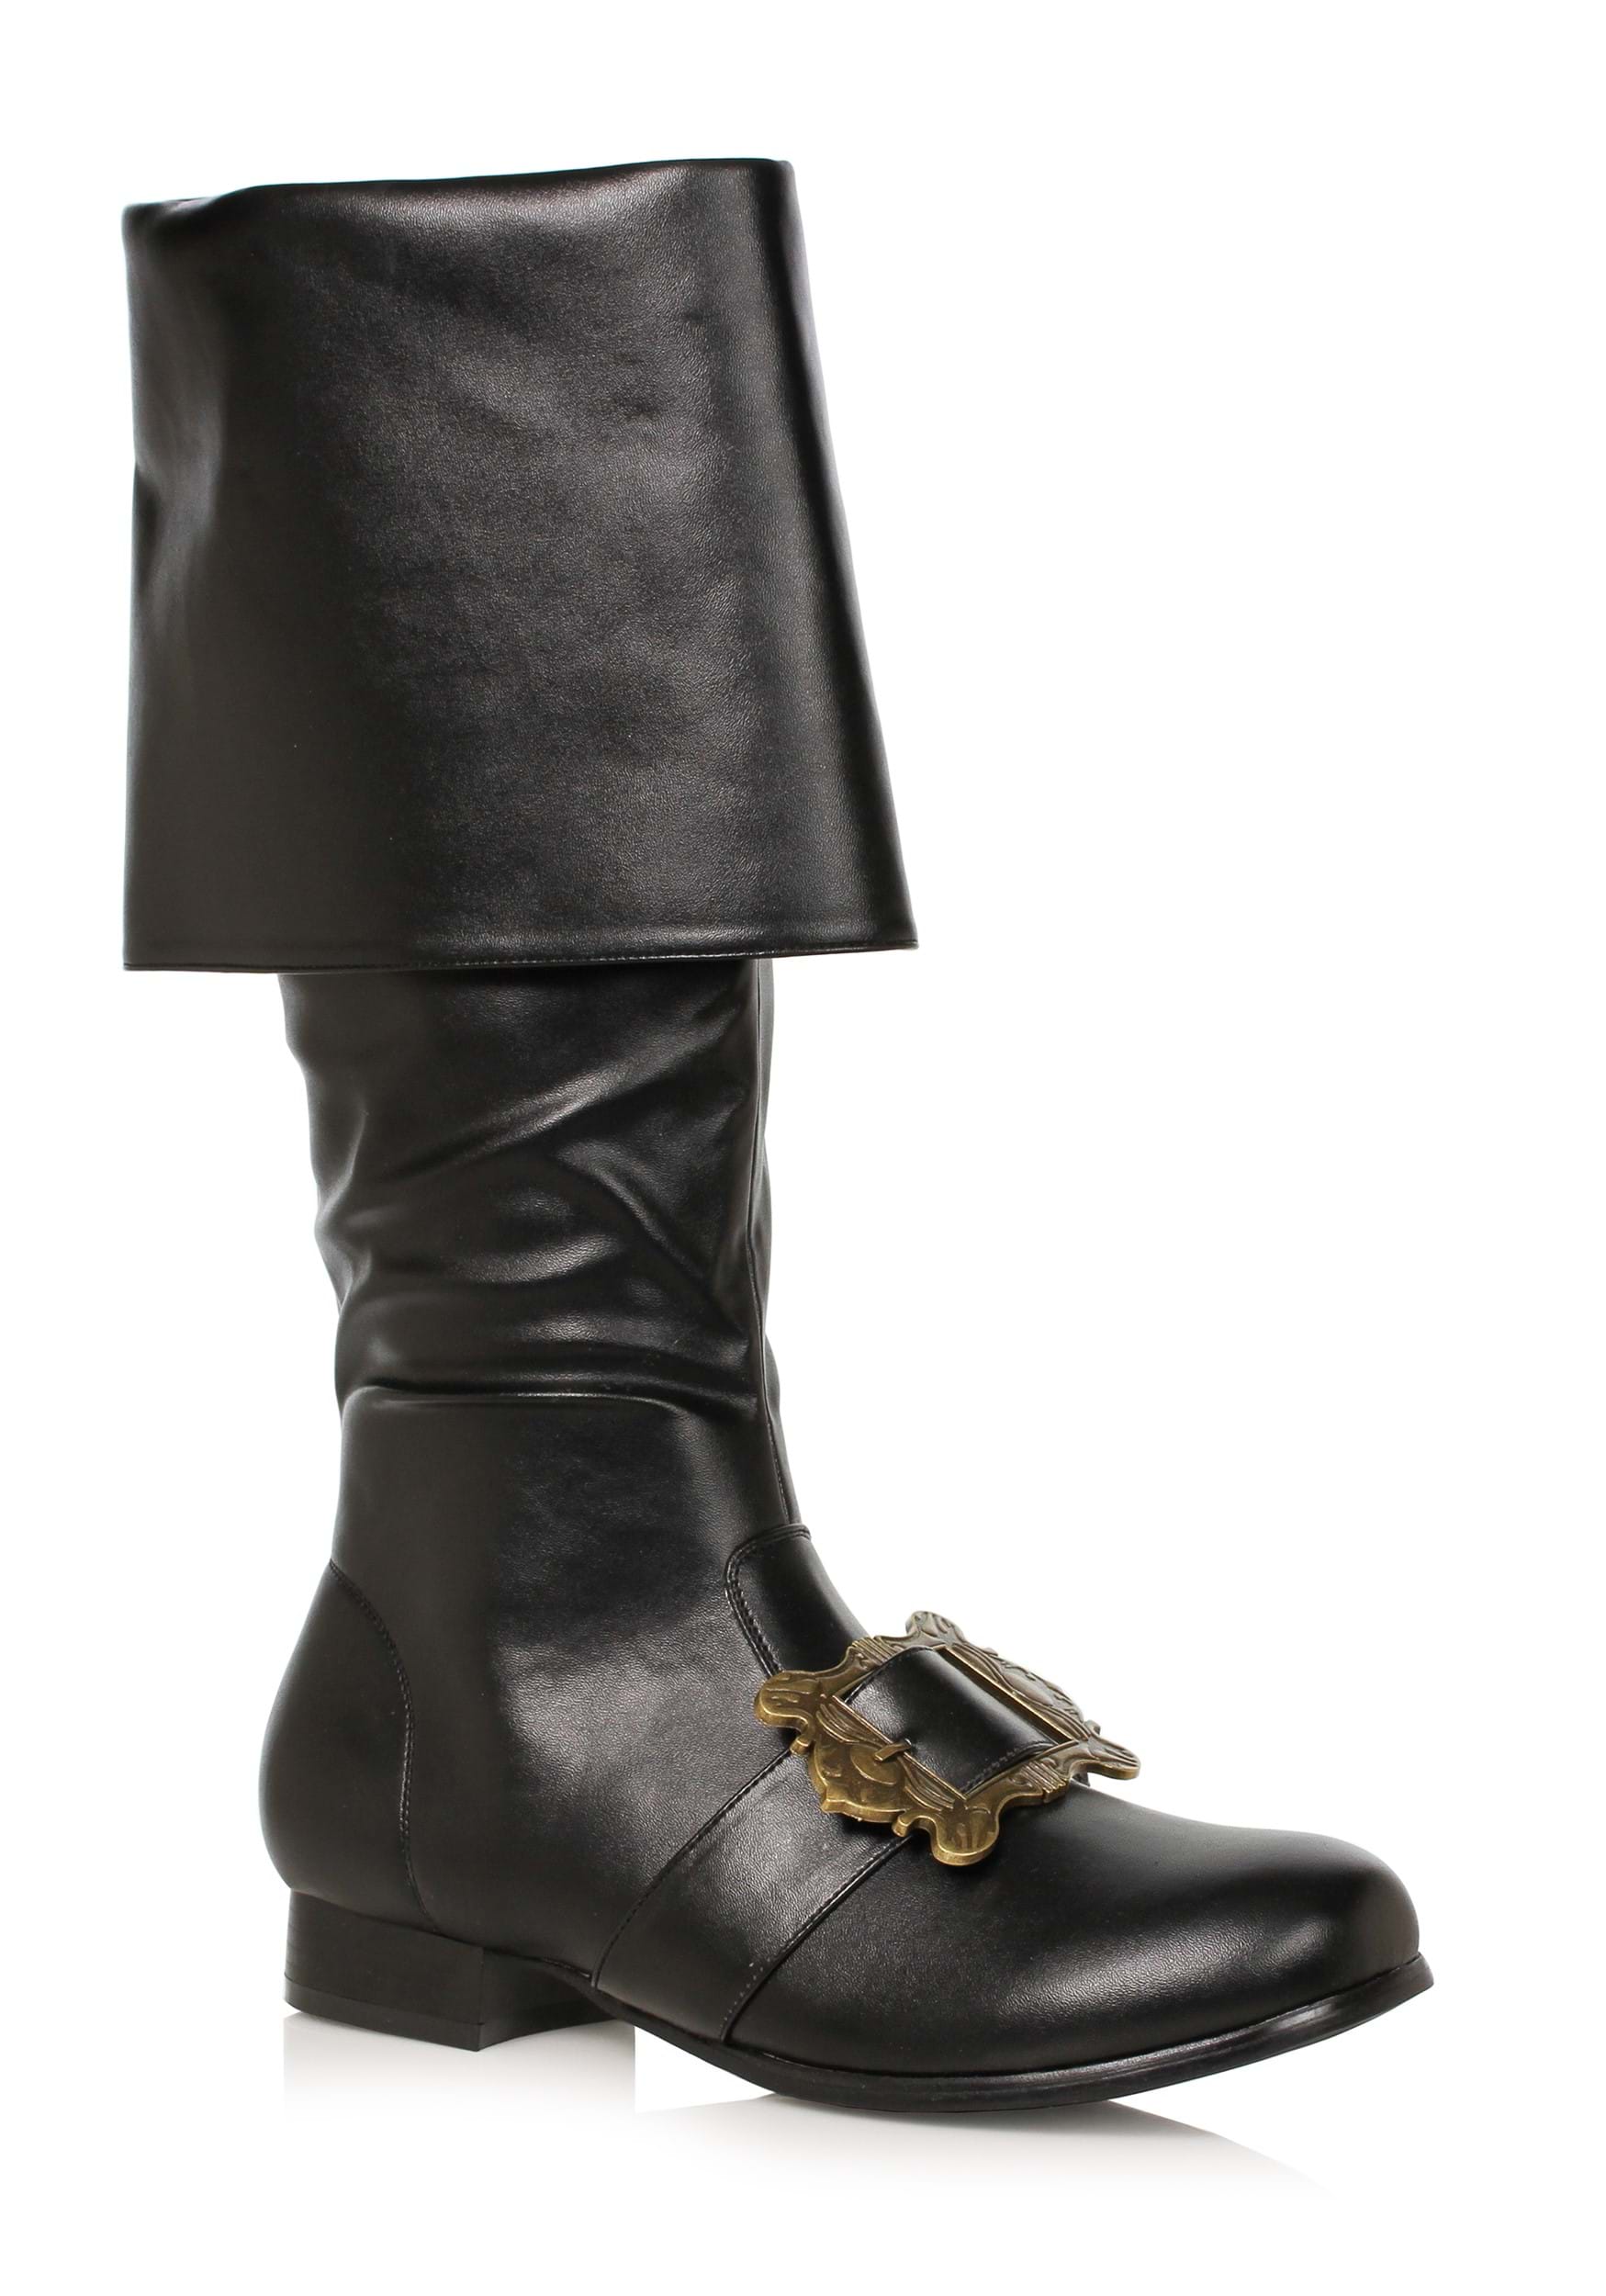 Image of Black Pirate Buckle Men's Boots ID EE121BUCKLER-XL